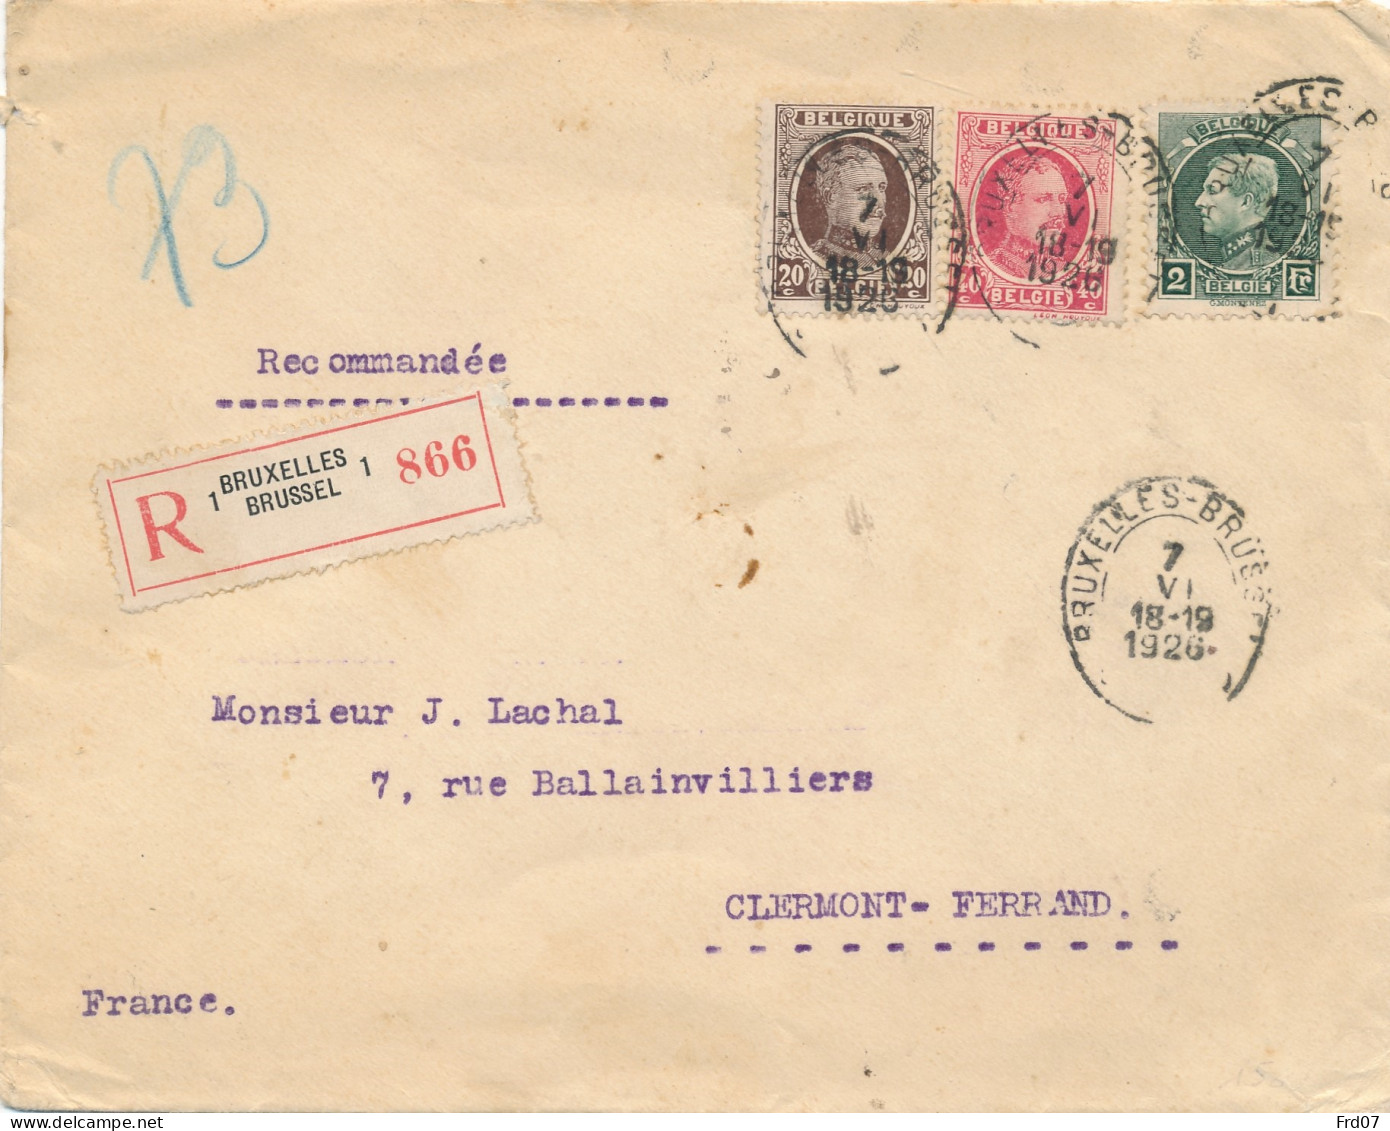 Tricolore 216, 202, 196 Sur Recommandé Bruxelles 7 VI 1926 Vers Clermont-Ferrand 8-8 26 - 1921-1925 Small Montenez